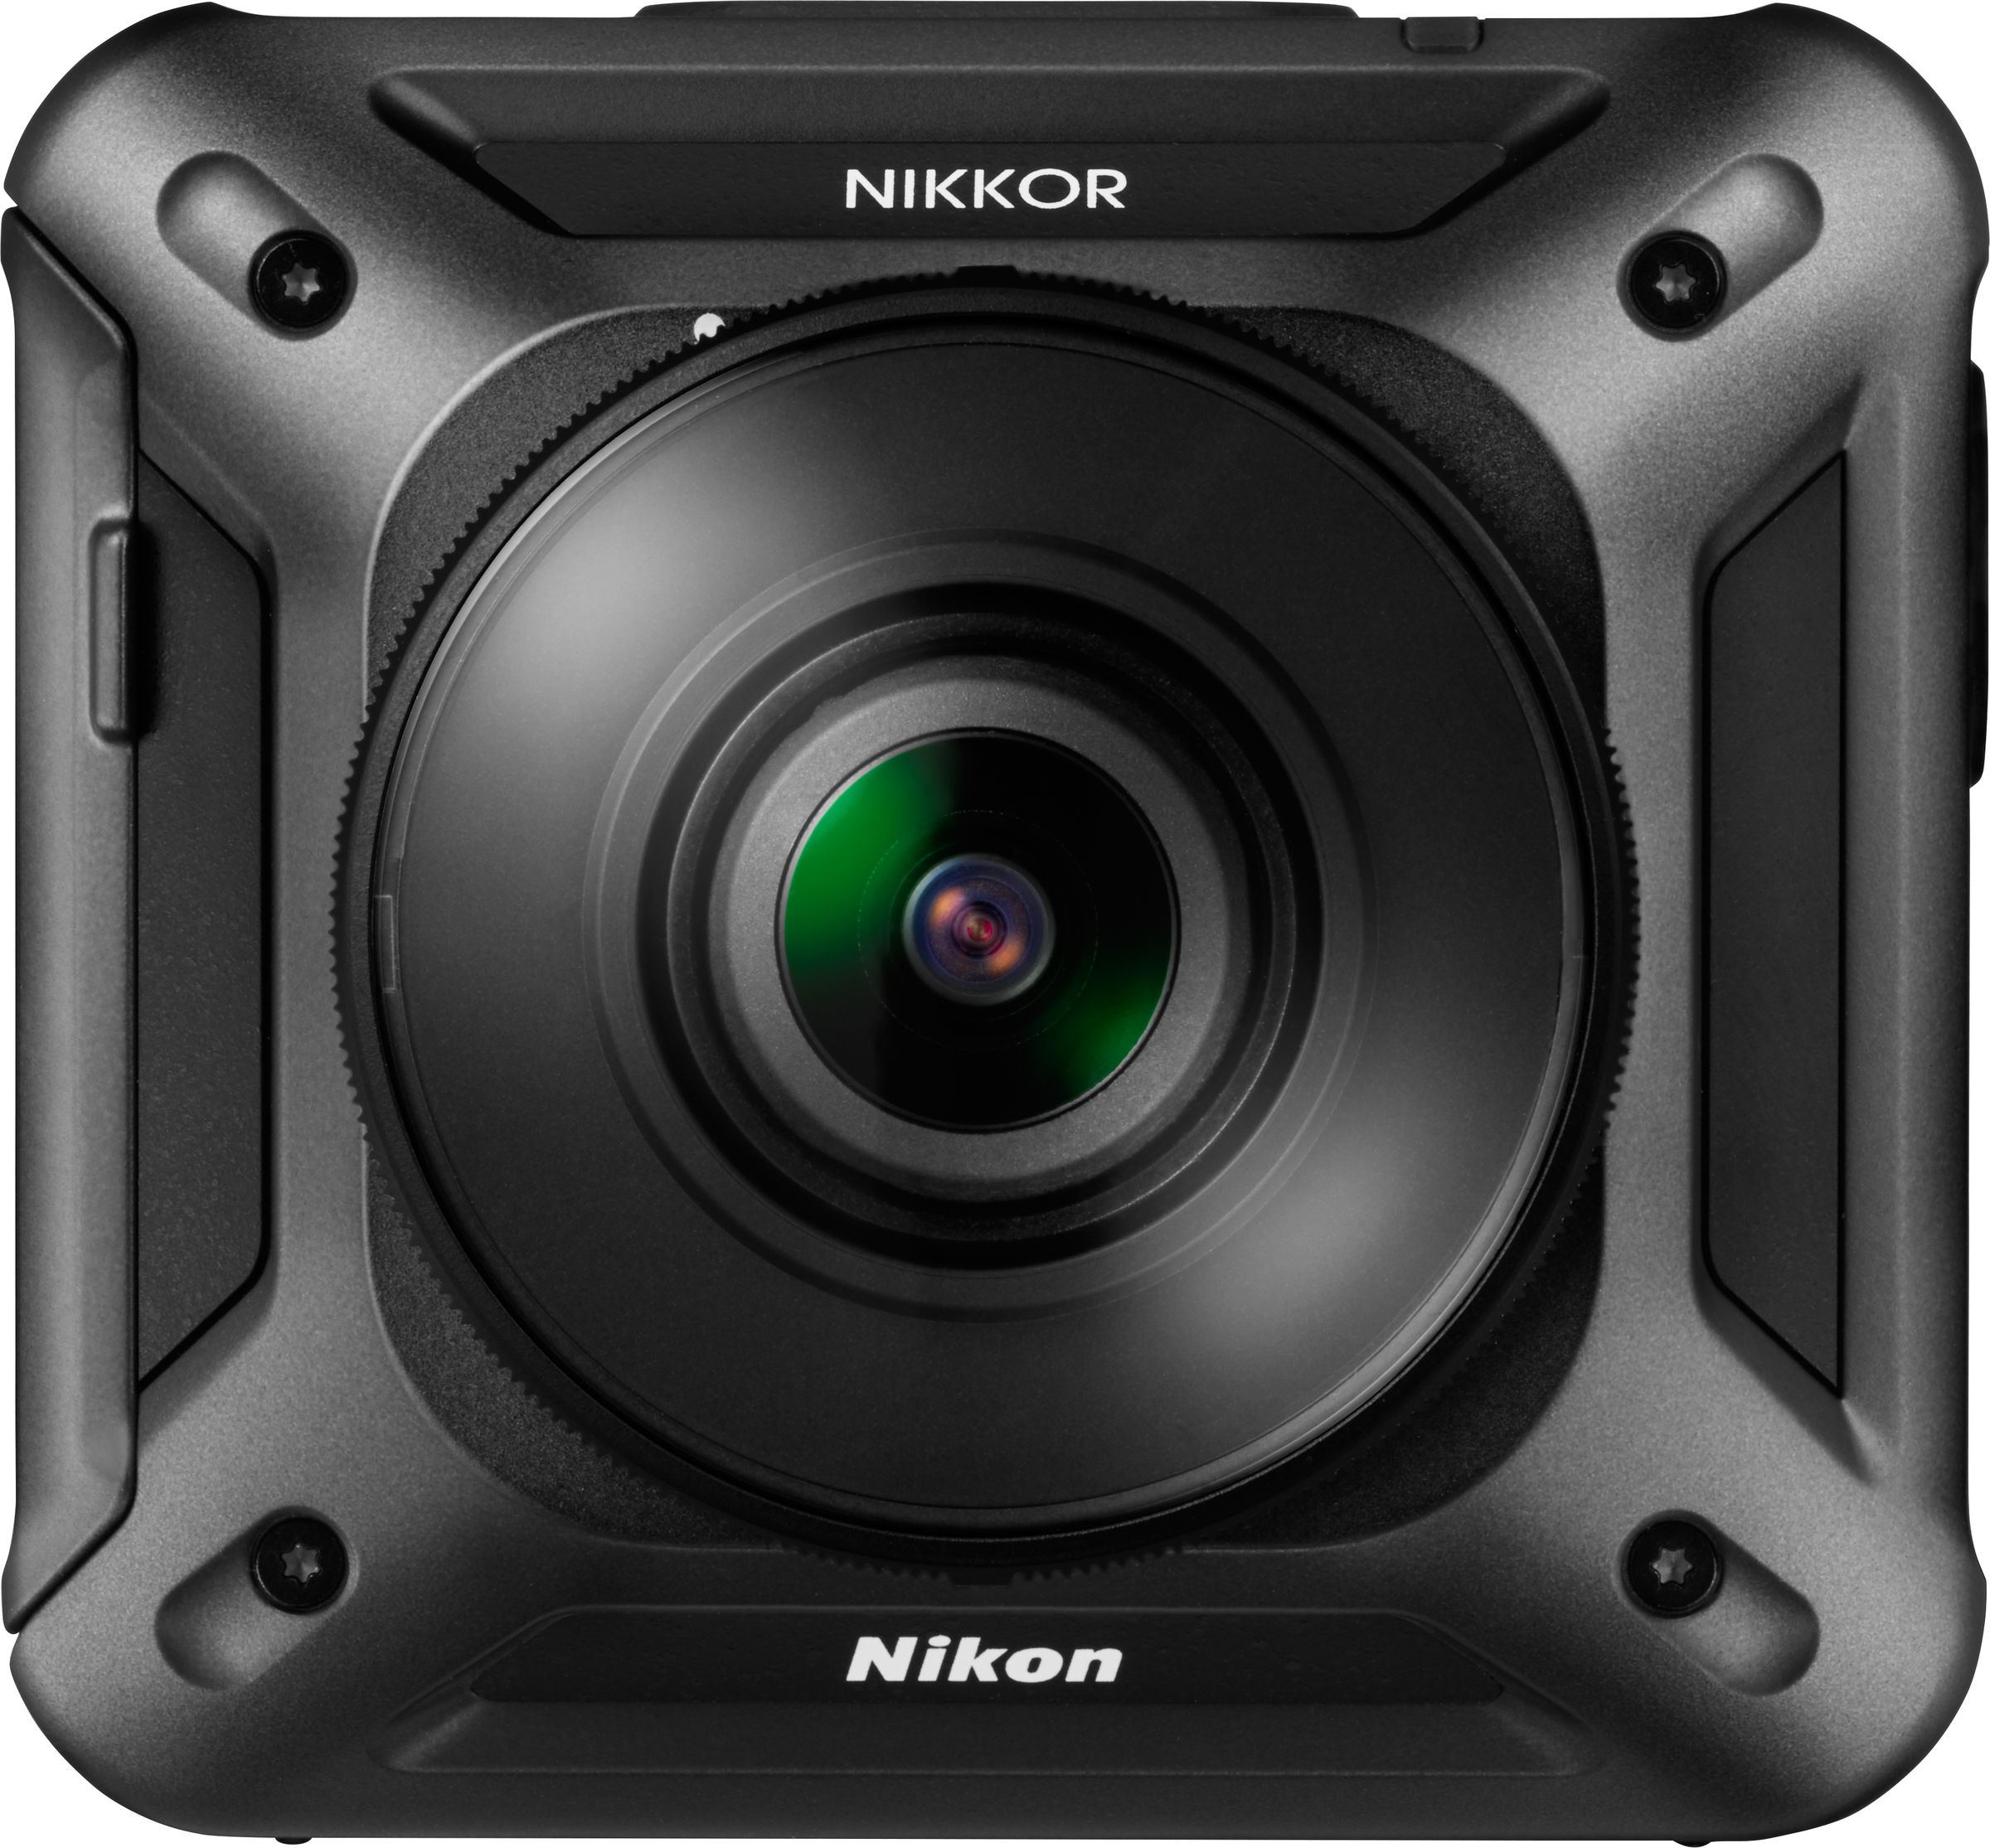 Nikon's 360-degree action camera in photos